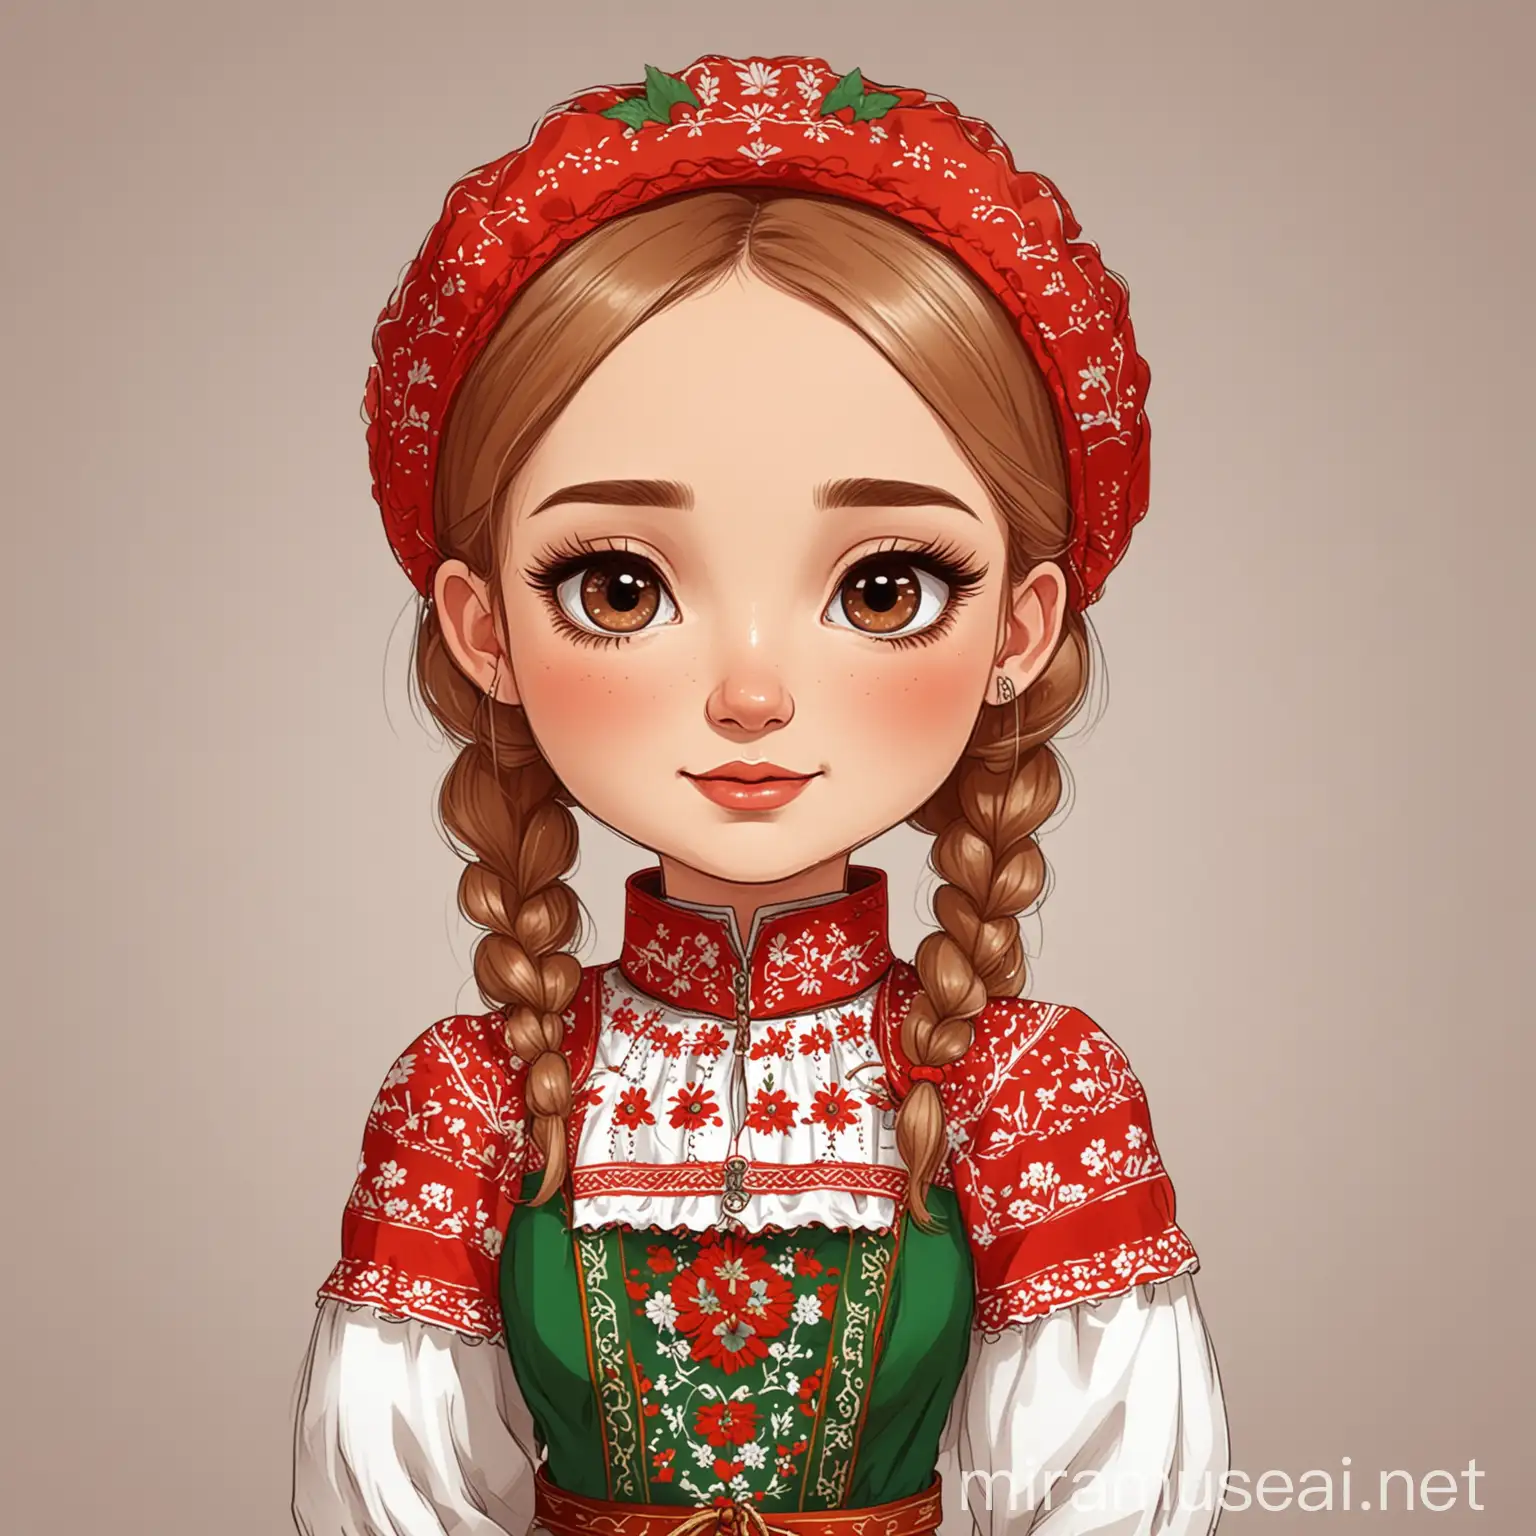 Мультяшная девочка в белорусском национальном костюме